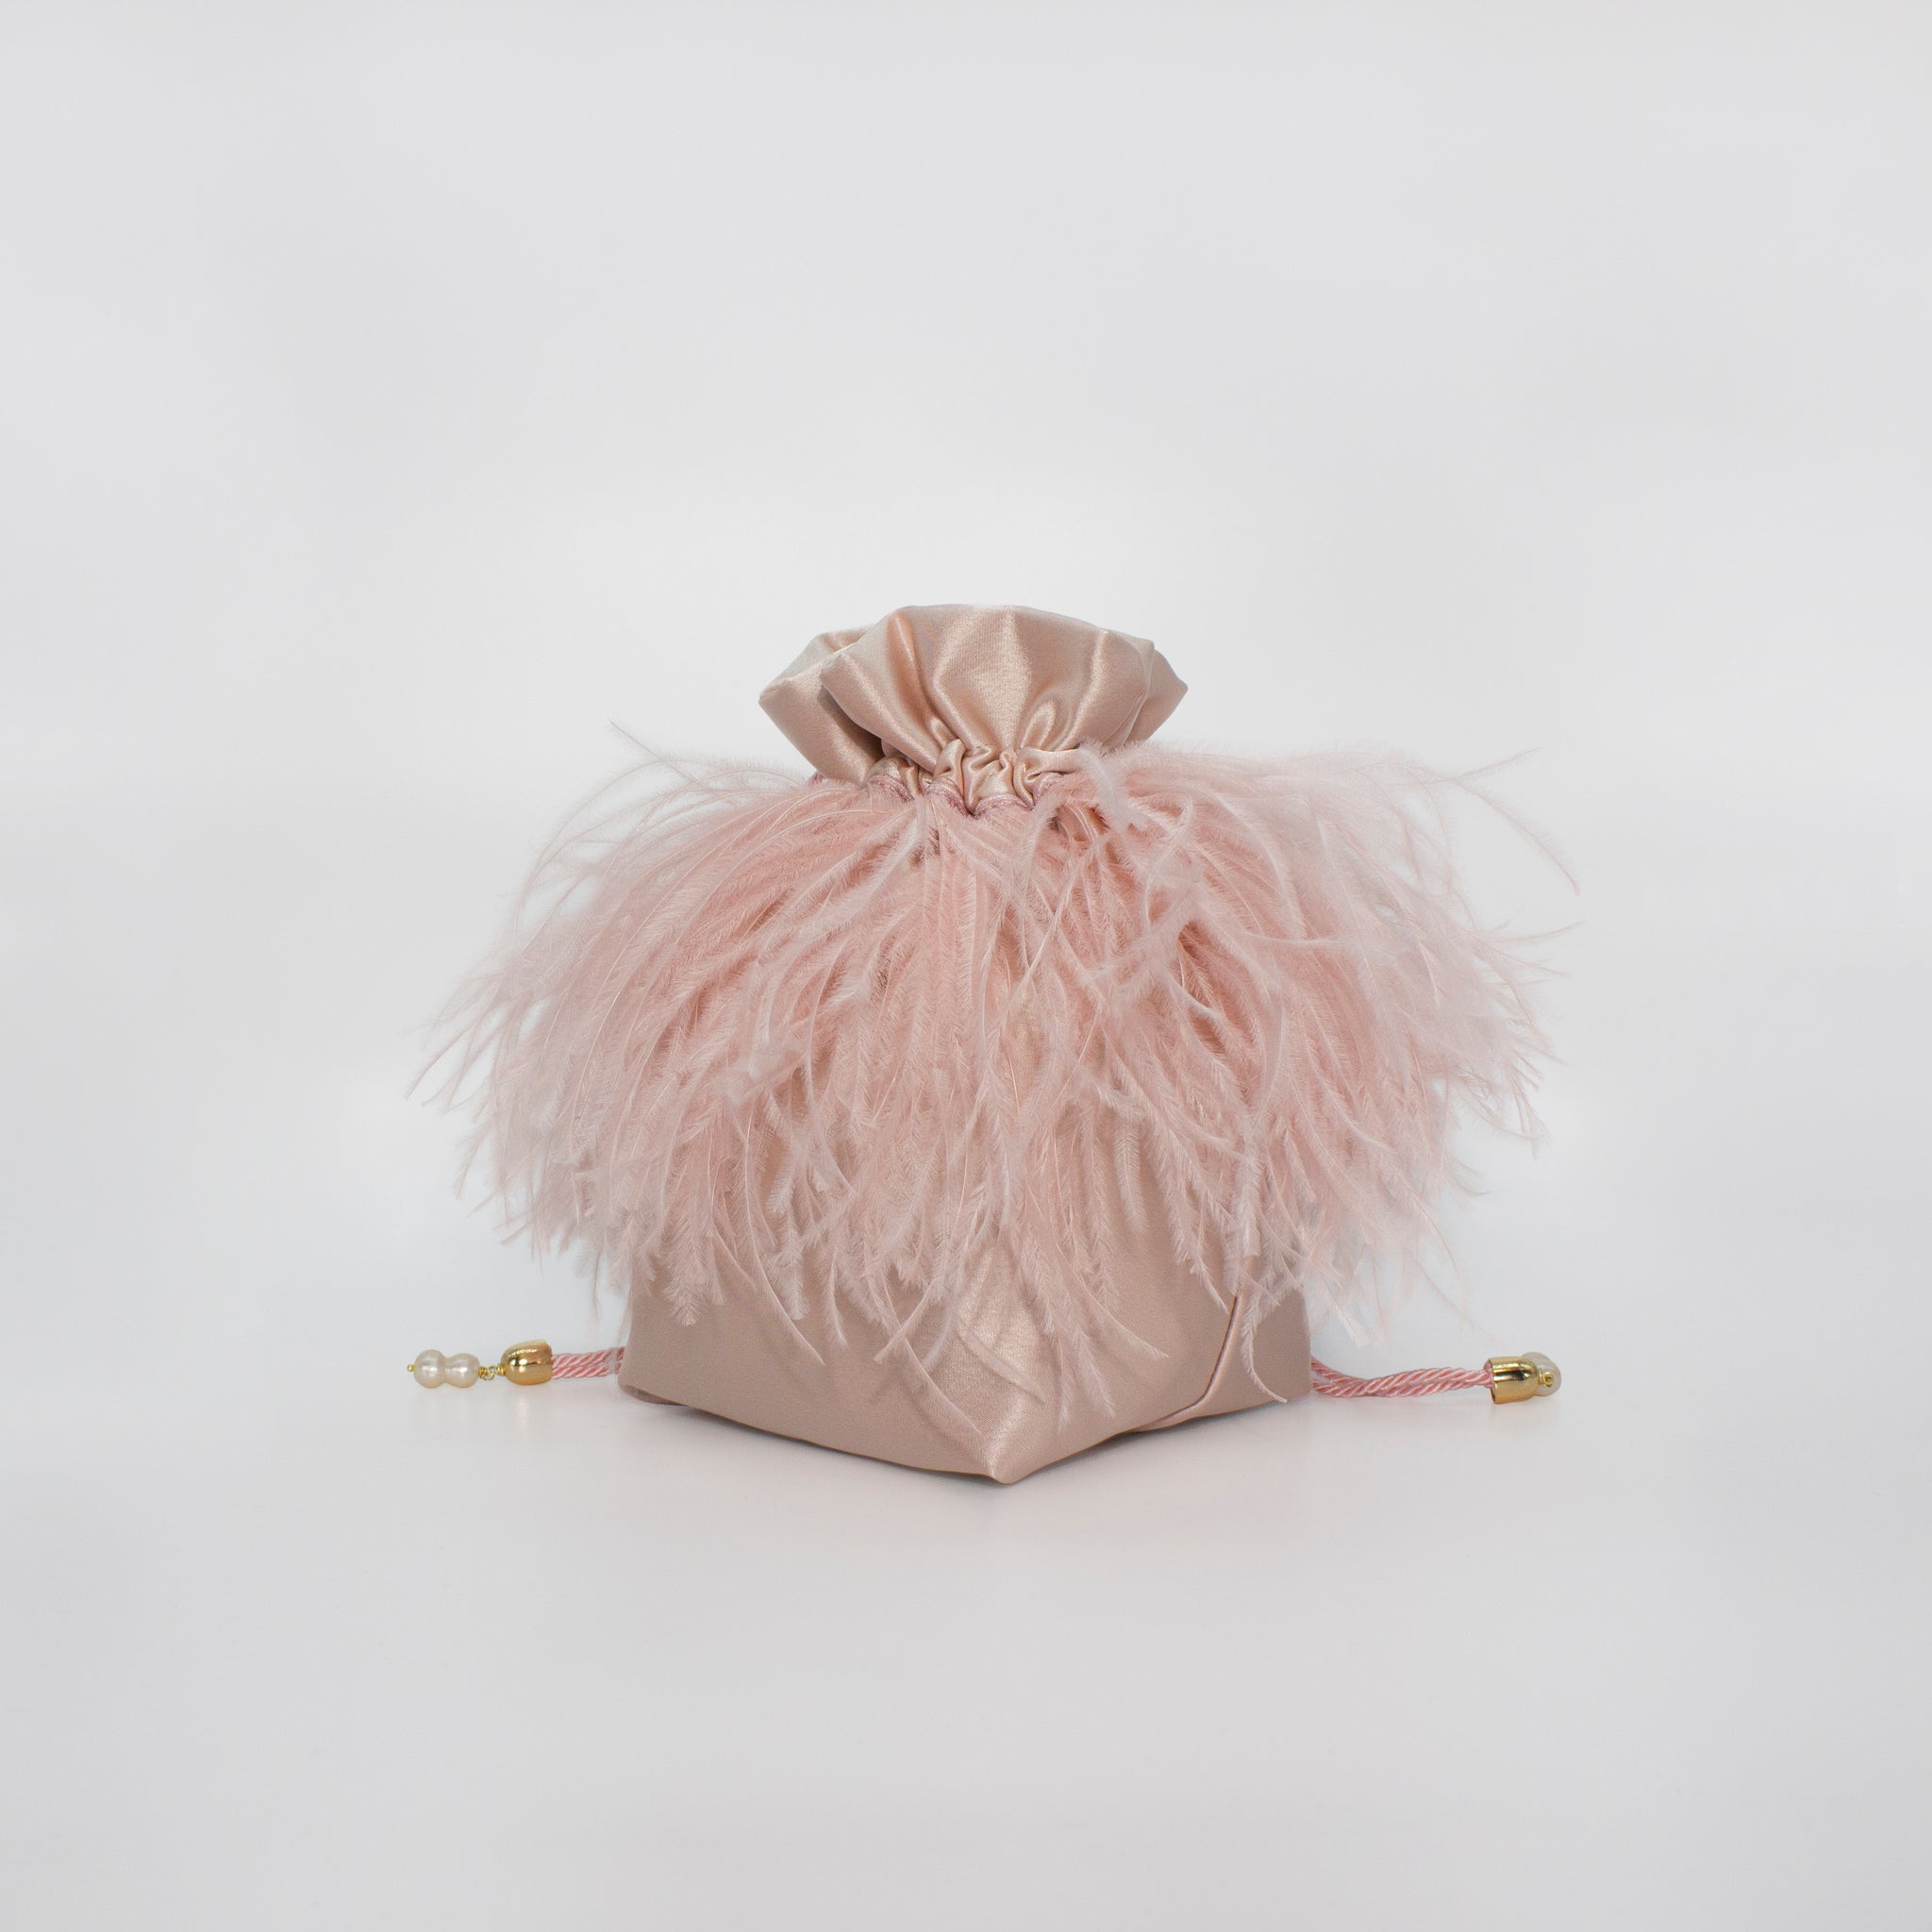 Feathers Collar Bag in colorazione rosa